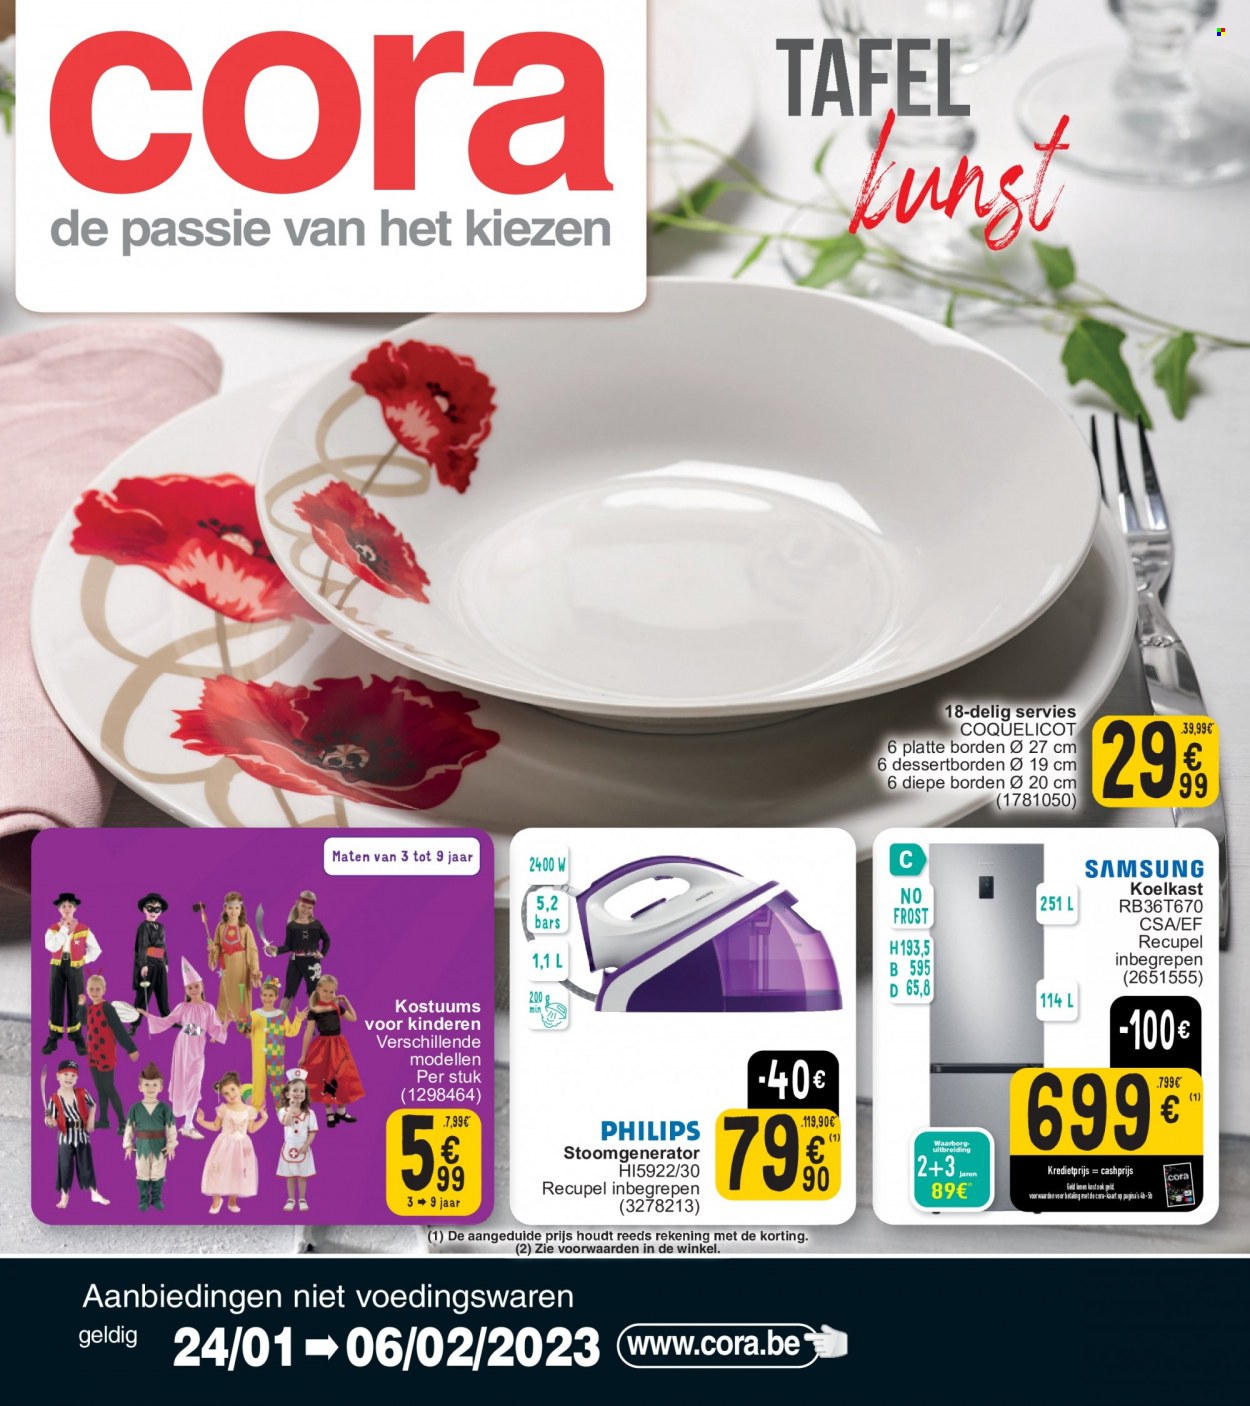 Cora-aanbieding - 24/01/2023 - 06/02/2023 -  producten in de aanbieding - Samsung, Philips, koelkast, stoomgenerator, tafel. Pagina 1.